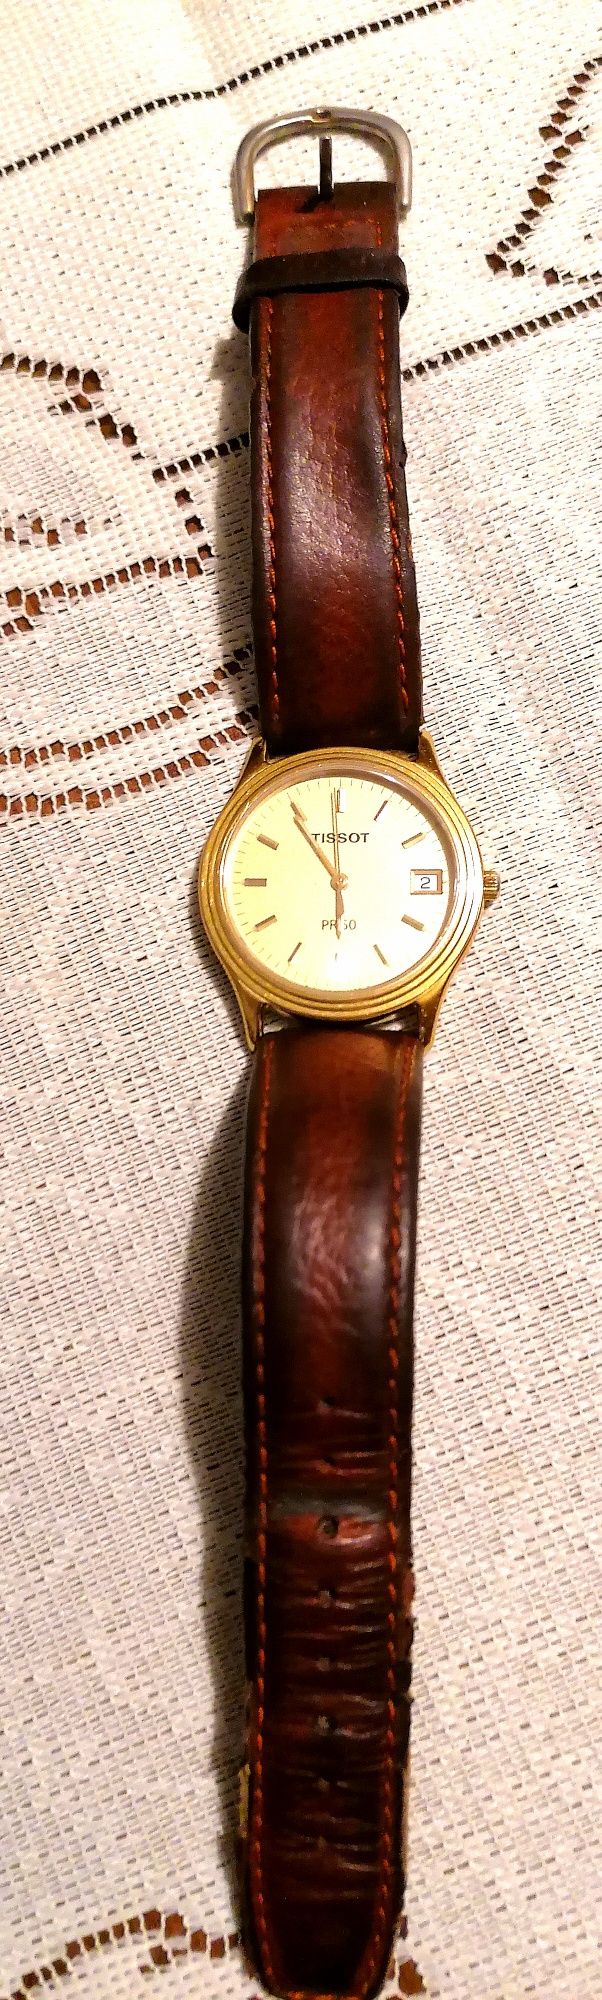 Zegarek na rękę Tissot szwajcarski średnica tarczy 34 mm